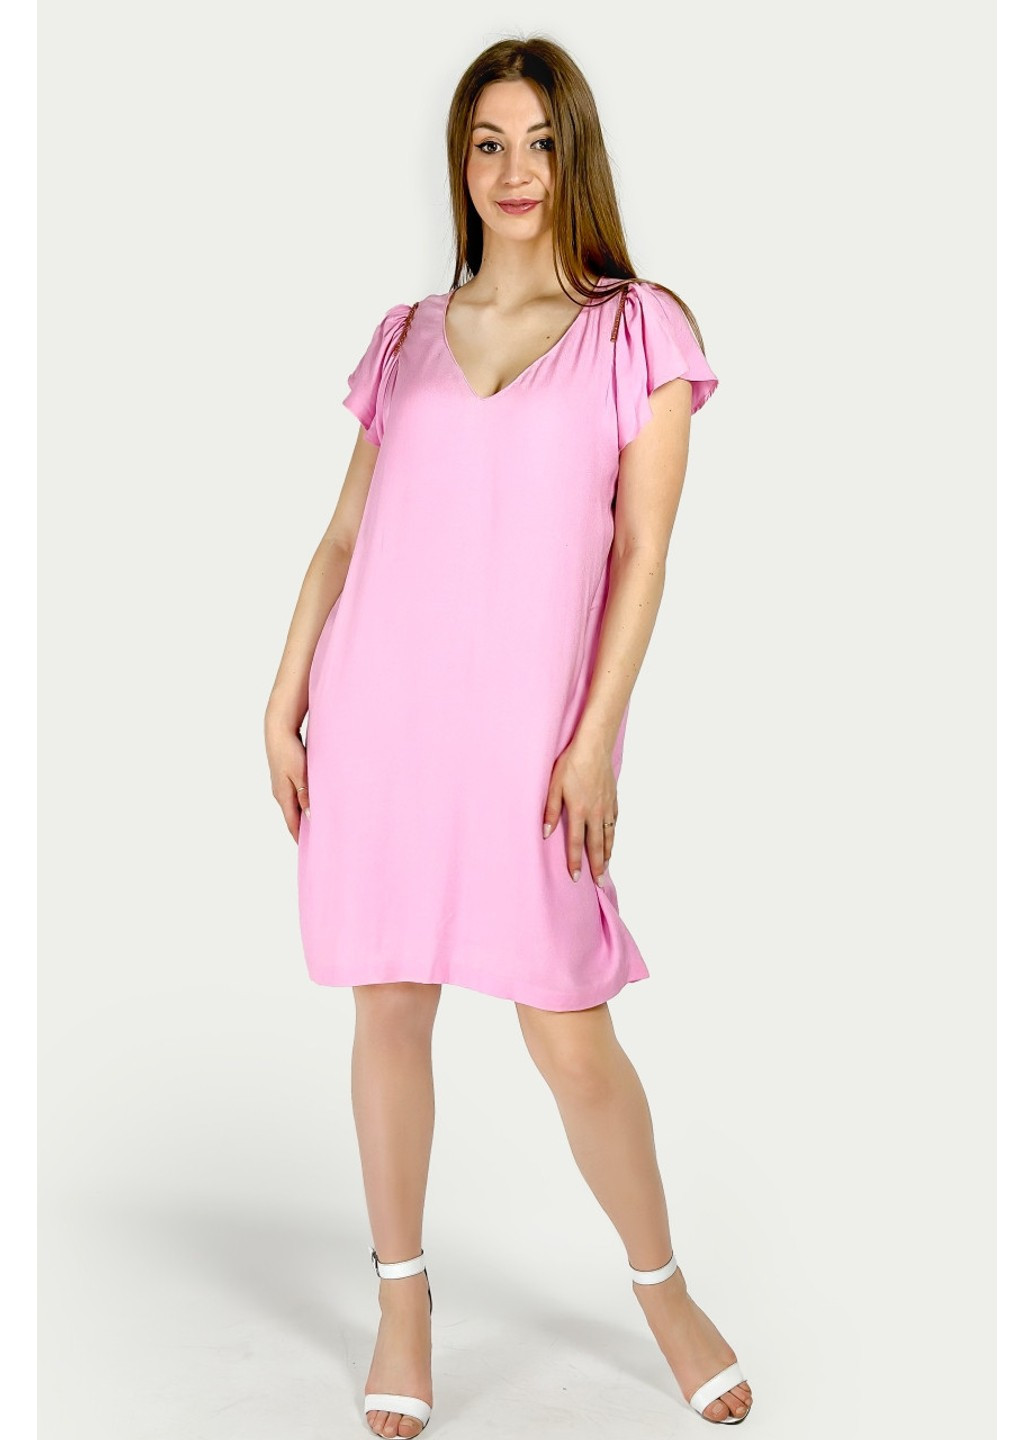 Рожева повсякденний сукня l1112/055/636 футляр Zara однотонна